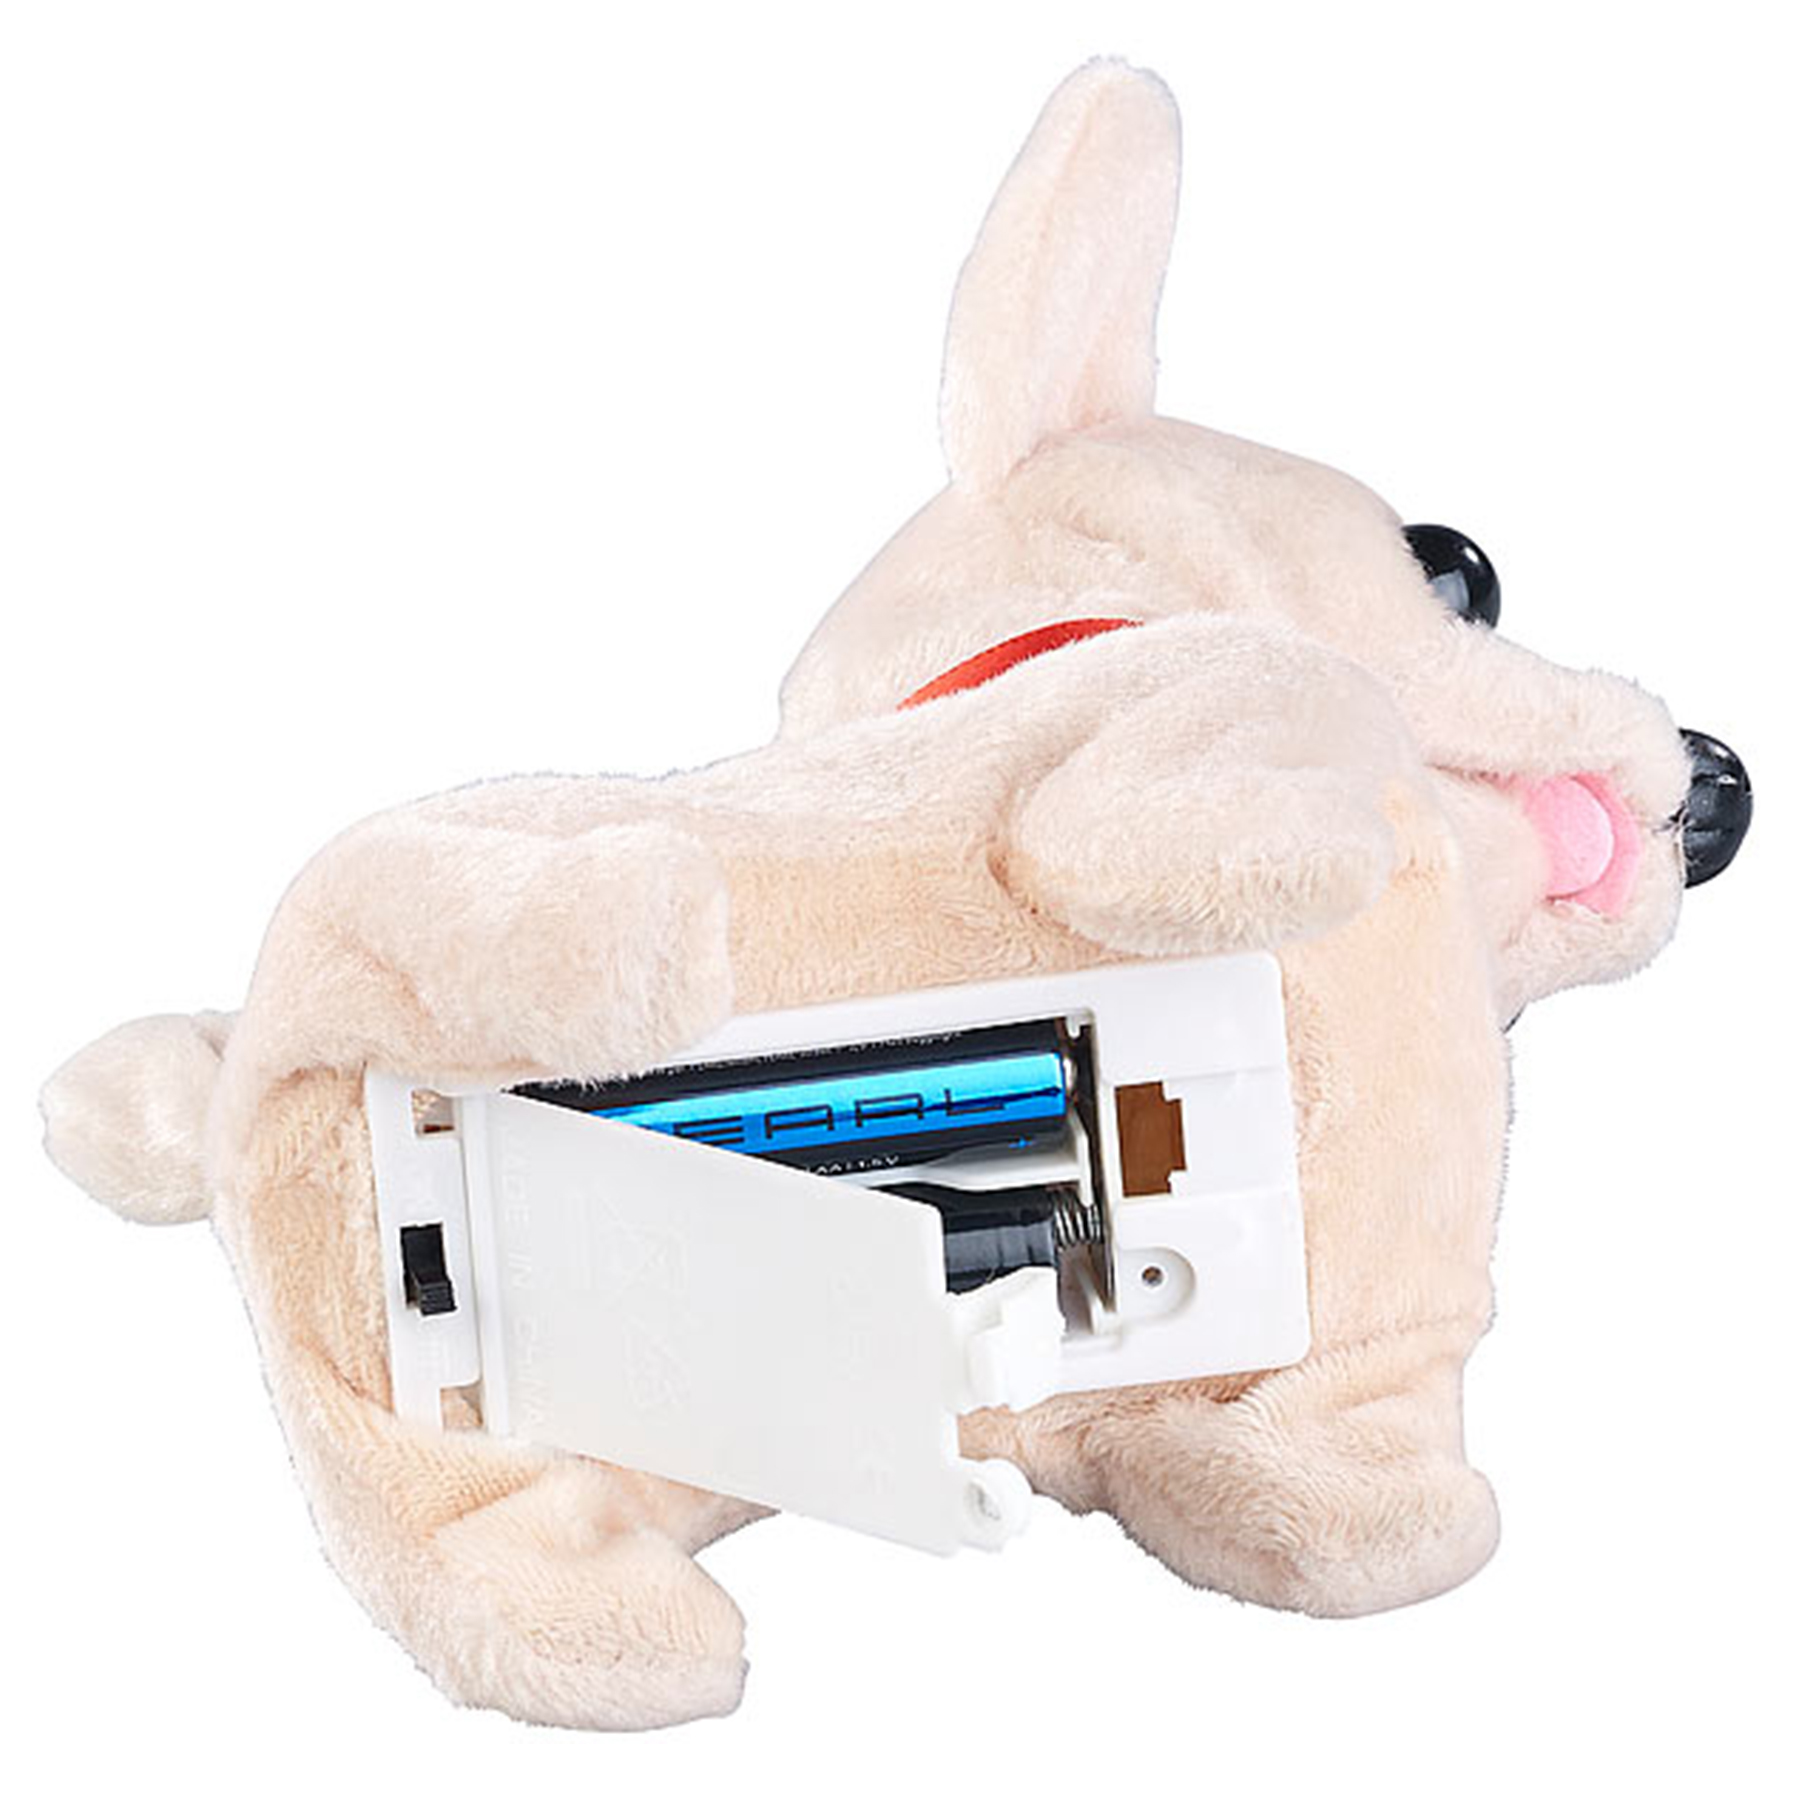 Laufendes Kuscheltier Chihuahua mit Soundeffekt 3849 - 2